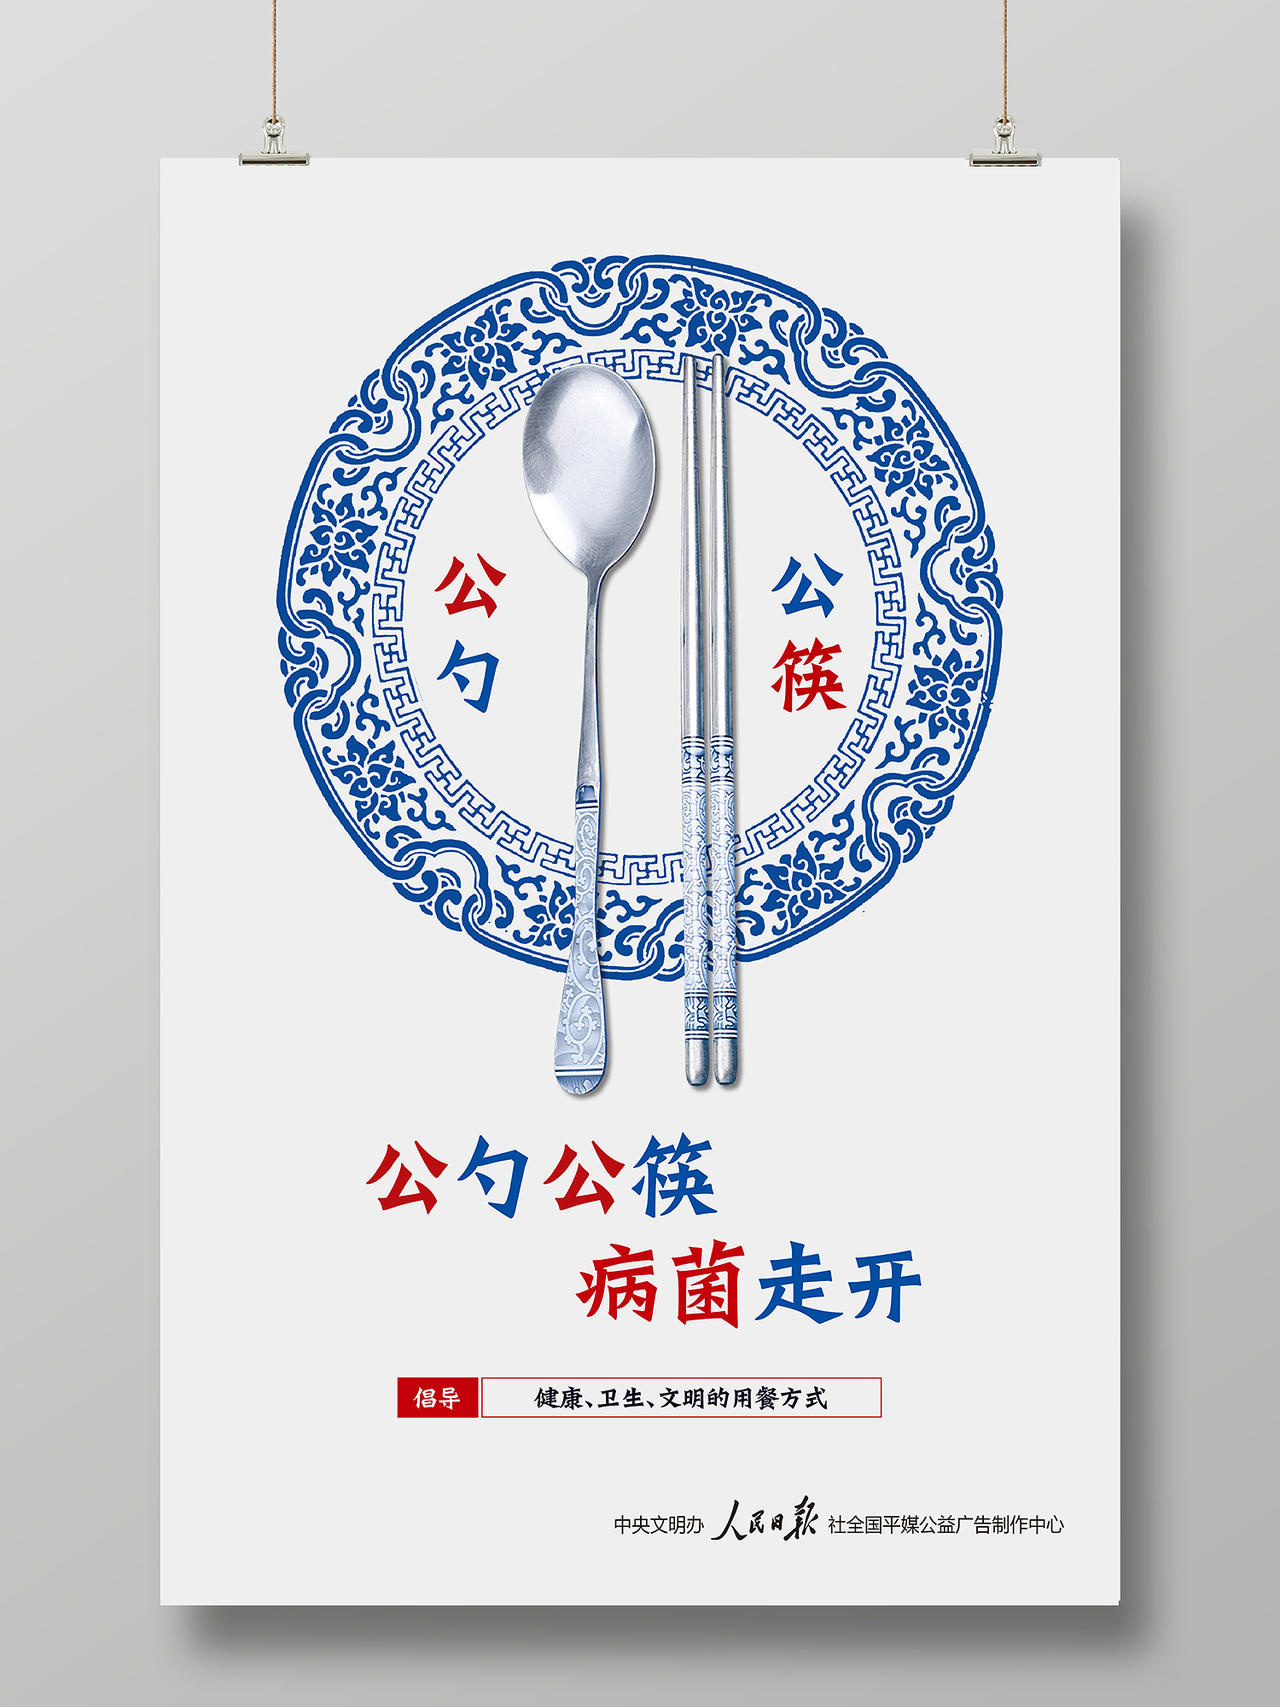 公勺公筷倡导健康卫生文明用餐宣传海报公筷公勺